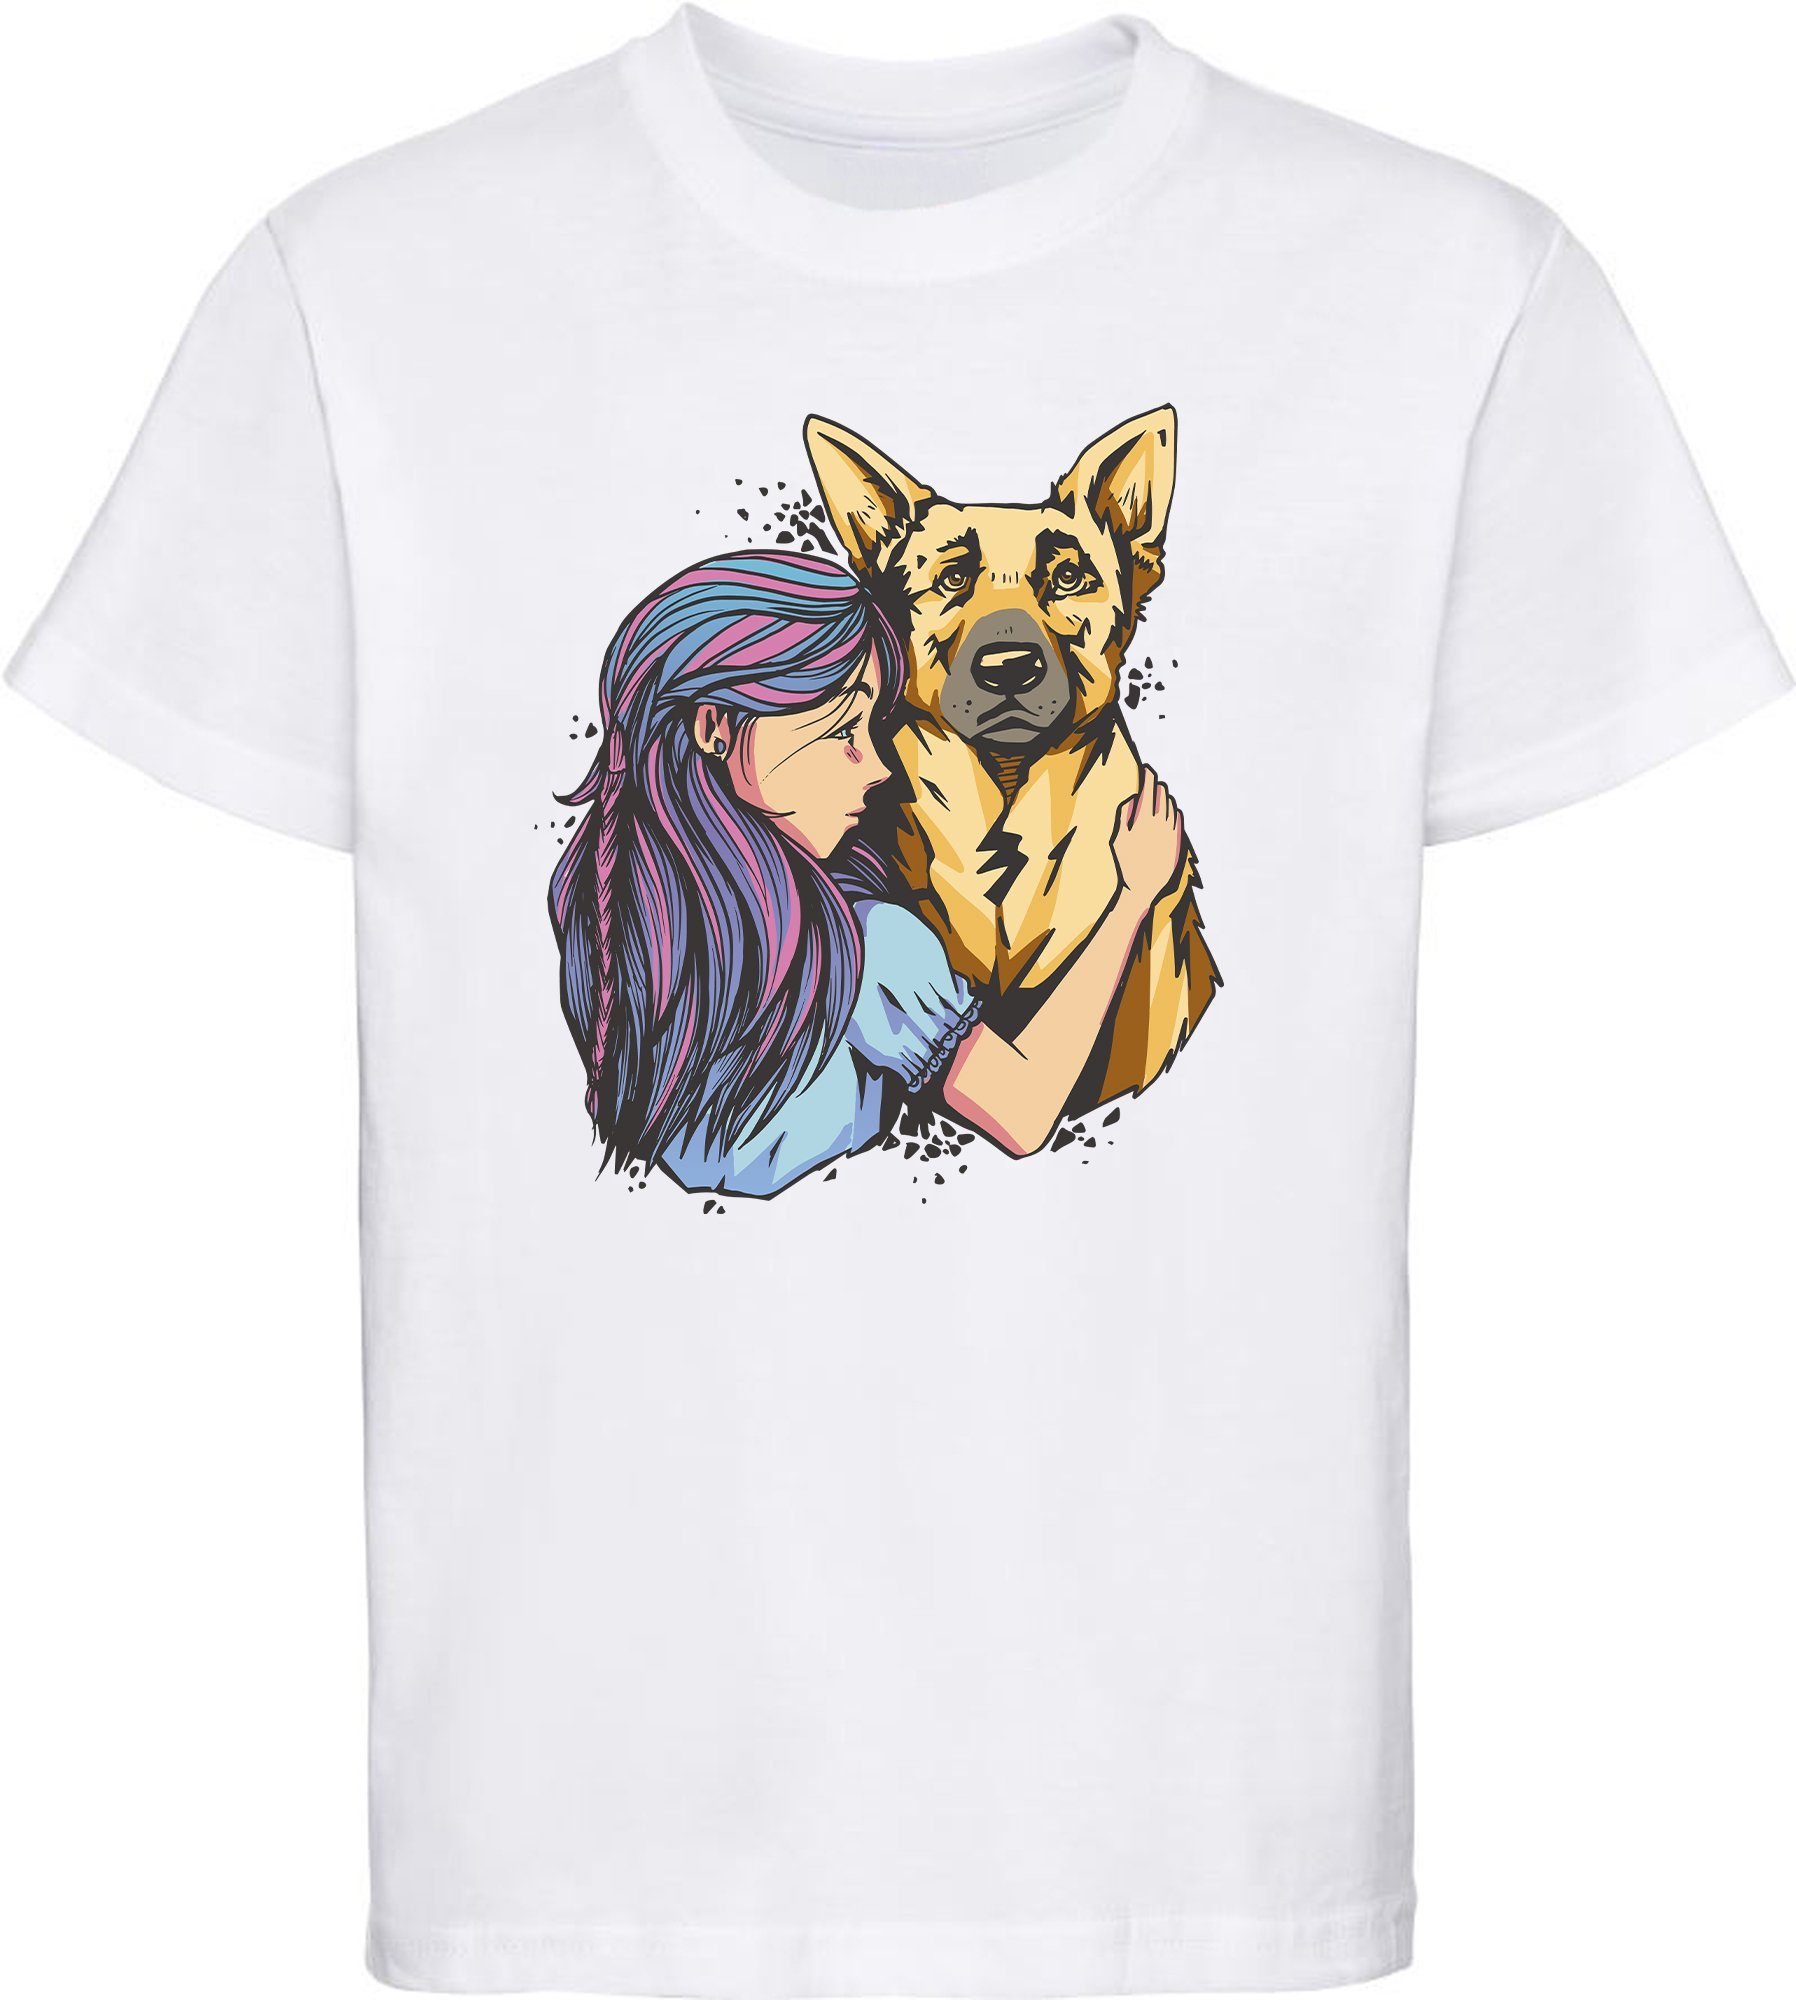 MyDesign24 T-Shirt Kinder Hunde Print Shirt bedruckt - Schäferhund mit Mädchen Baumwollshirt mit Aufdruck, i258 weiss